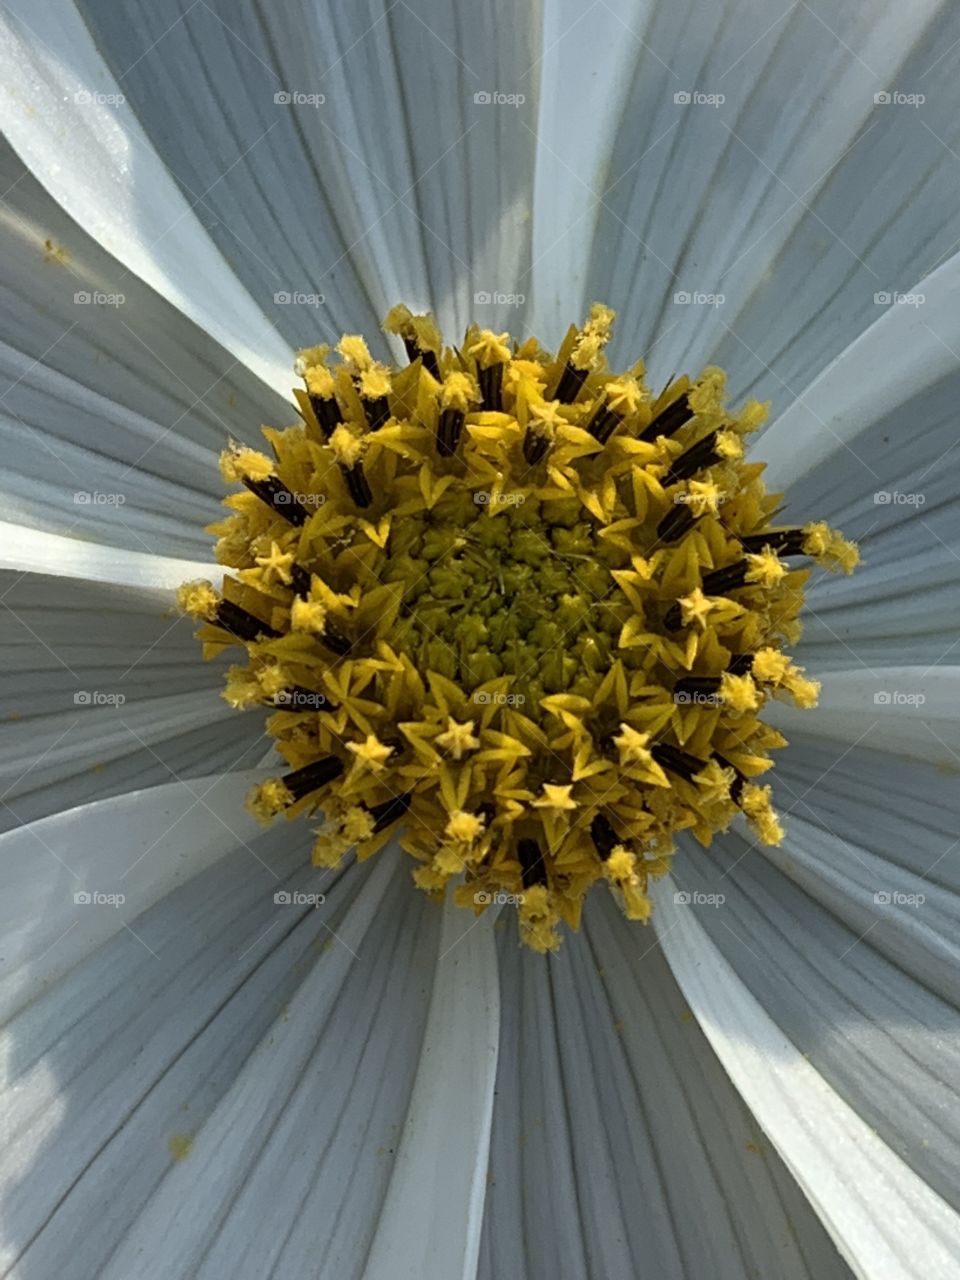 Inside of the flower